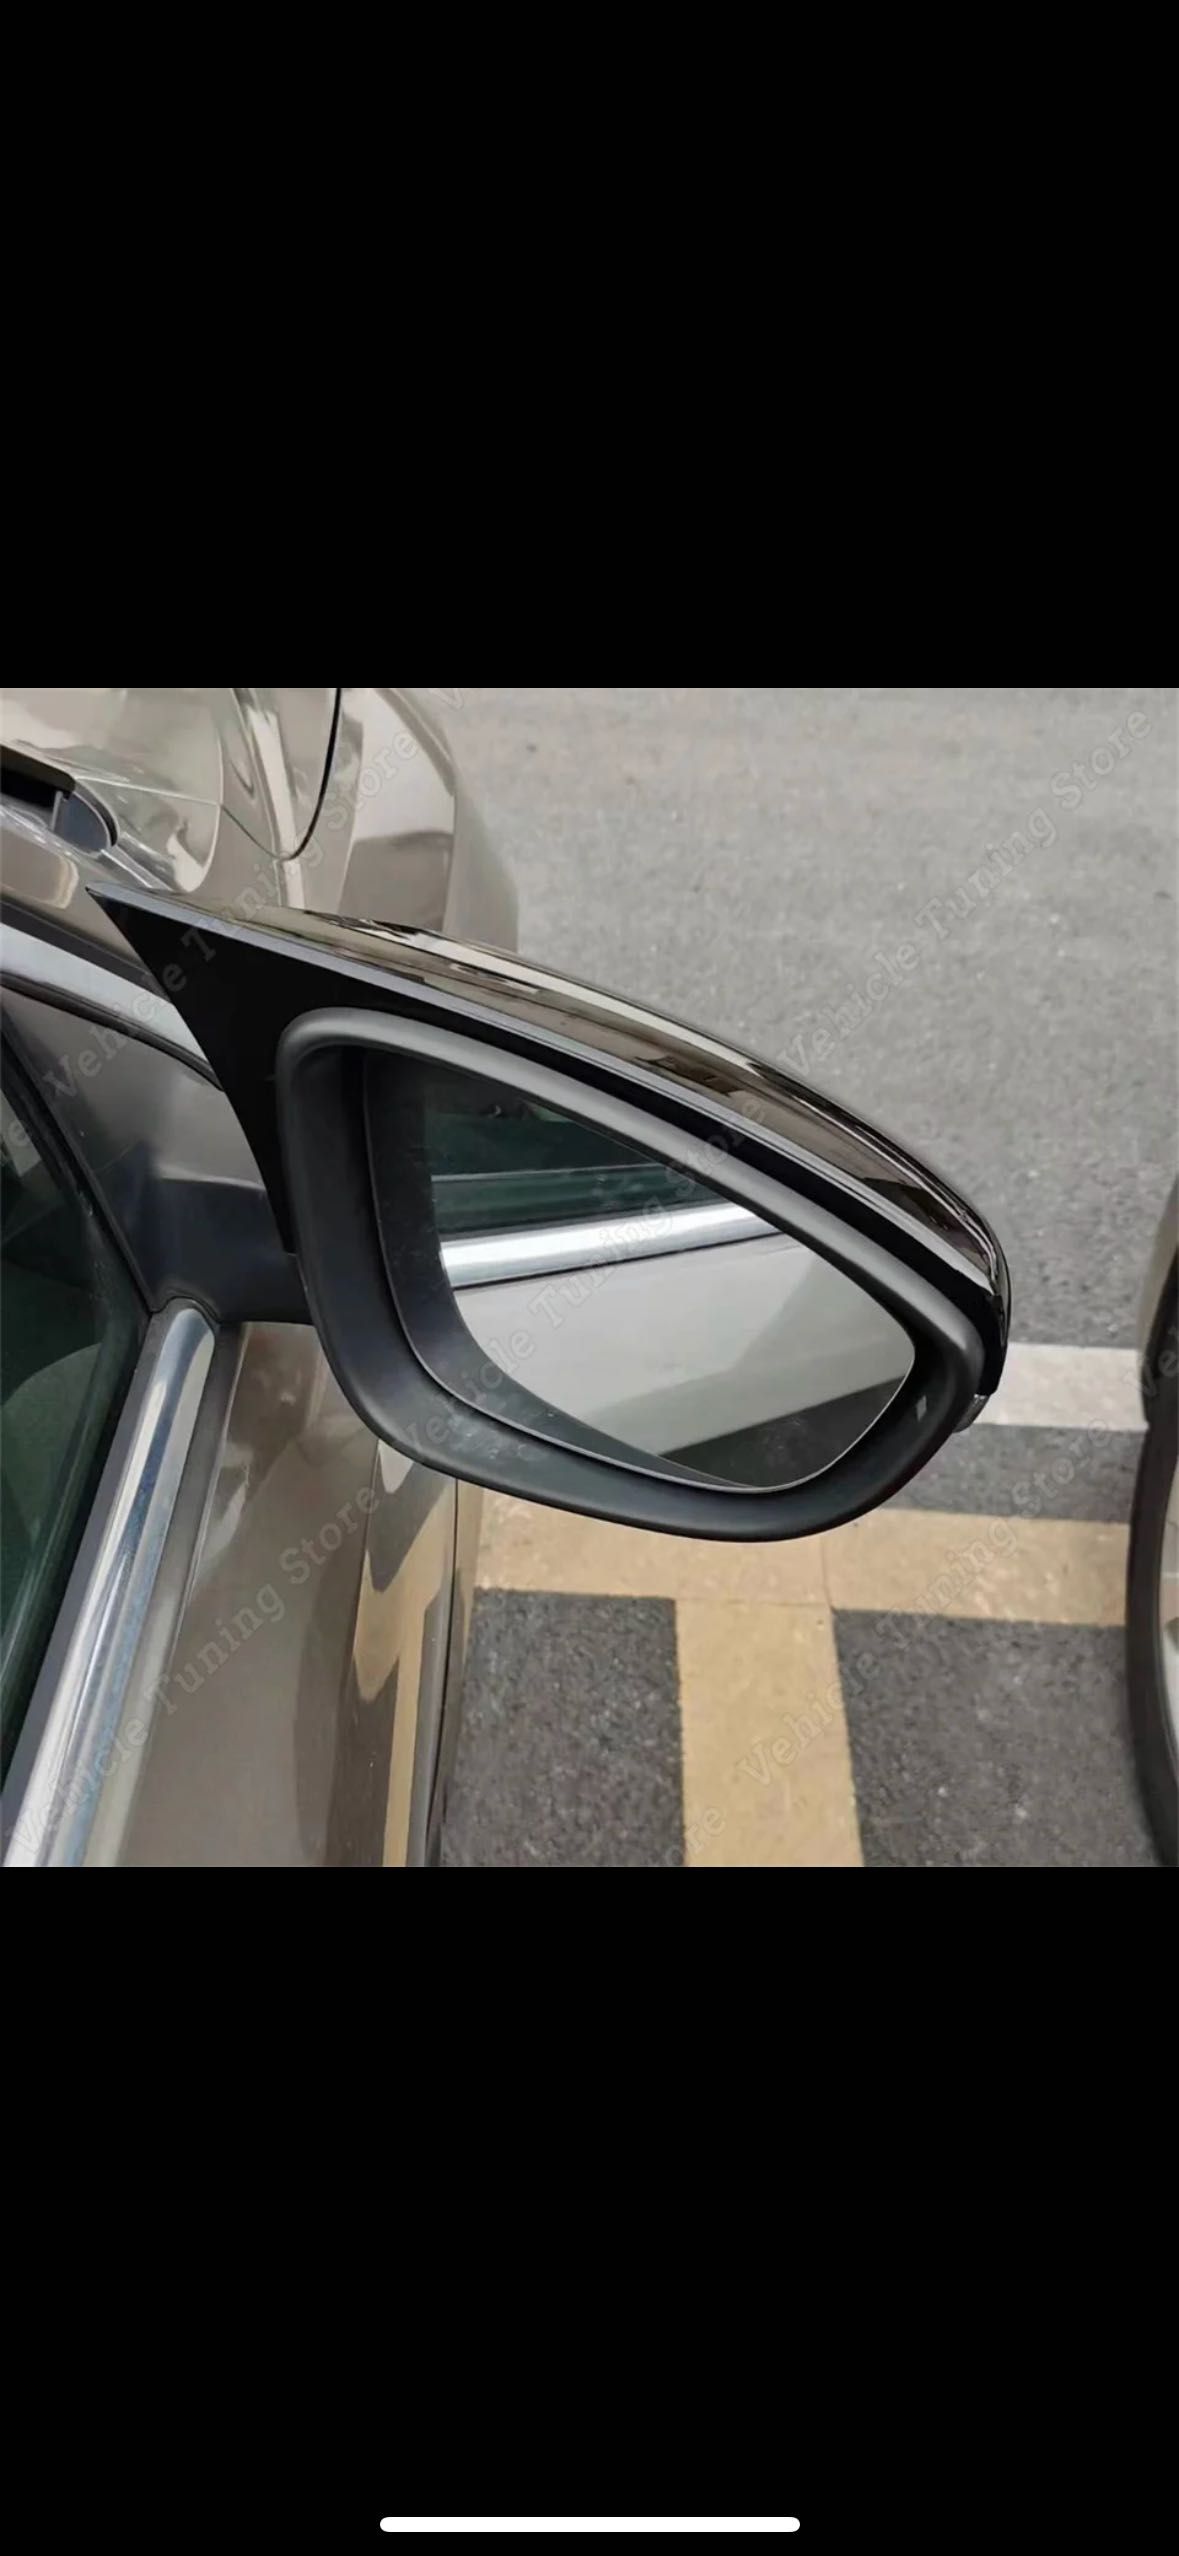 Накладки на зеркала Volkswagen Scirocco на боковые зеркала сироко